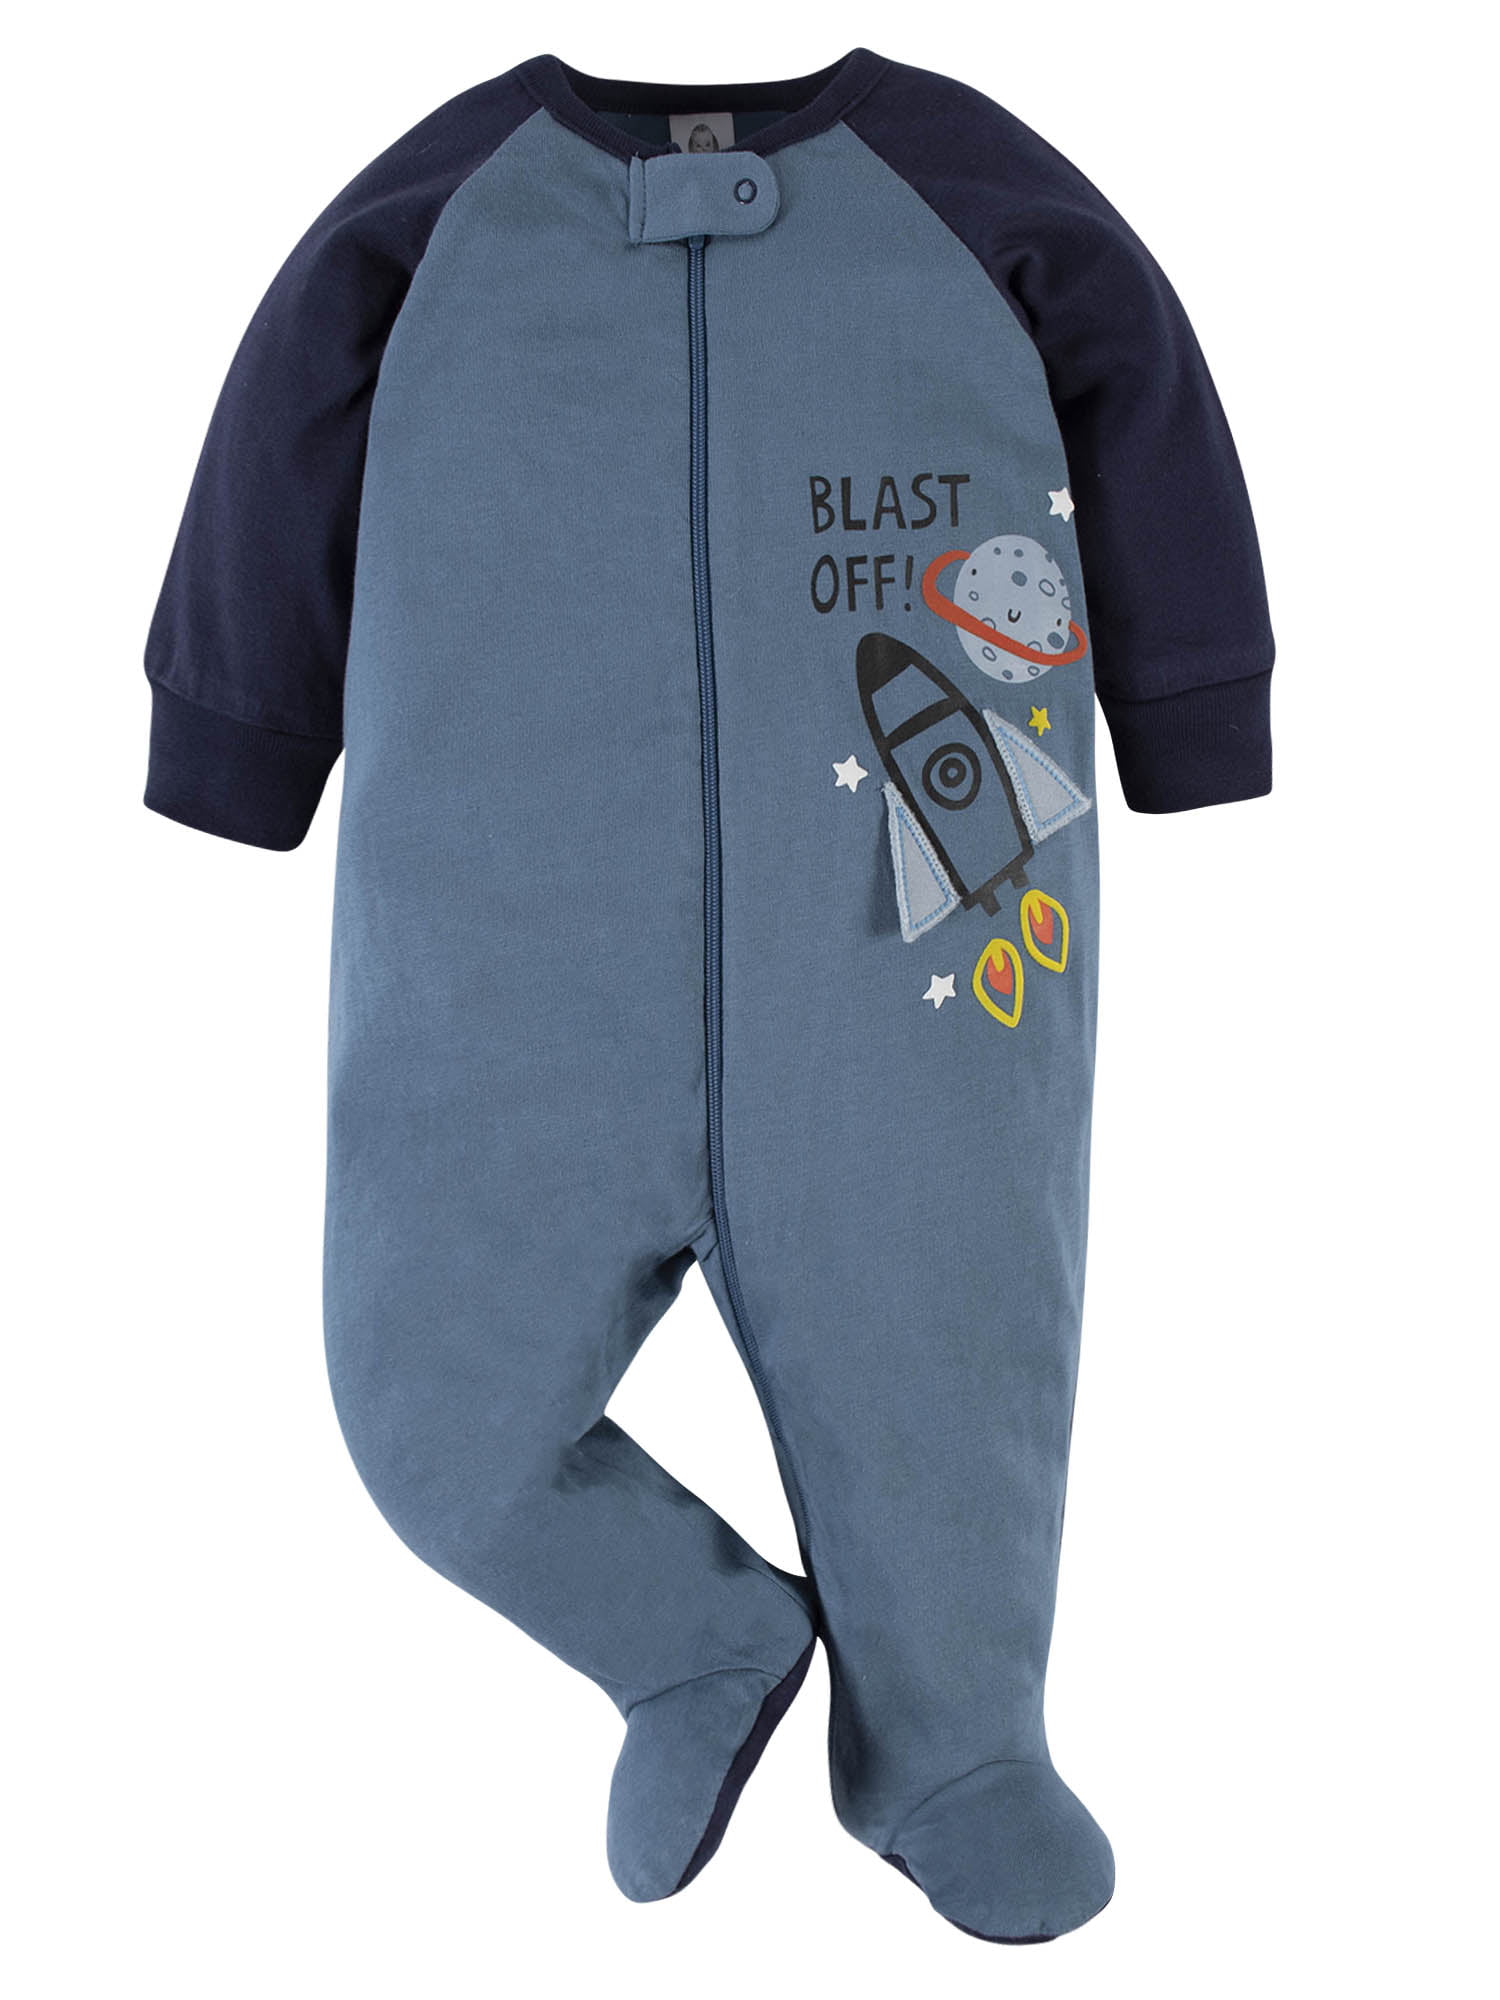 Exbrand Baby Boys Girls Unisex Newborn Sleepsuits Hello Little One Cotton Romper Sleepsuits 0-9 Months 